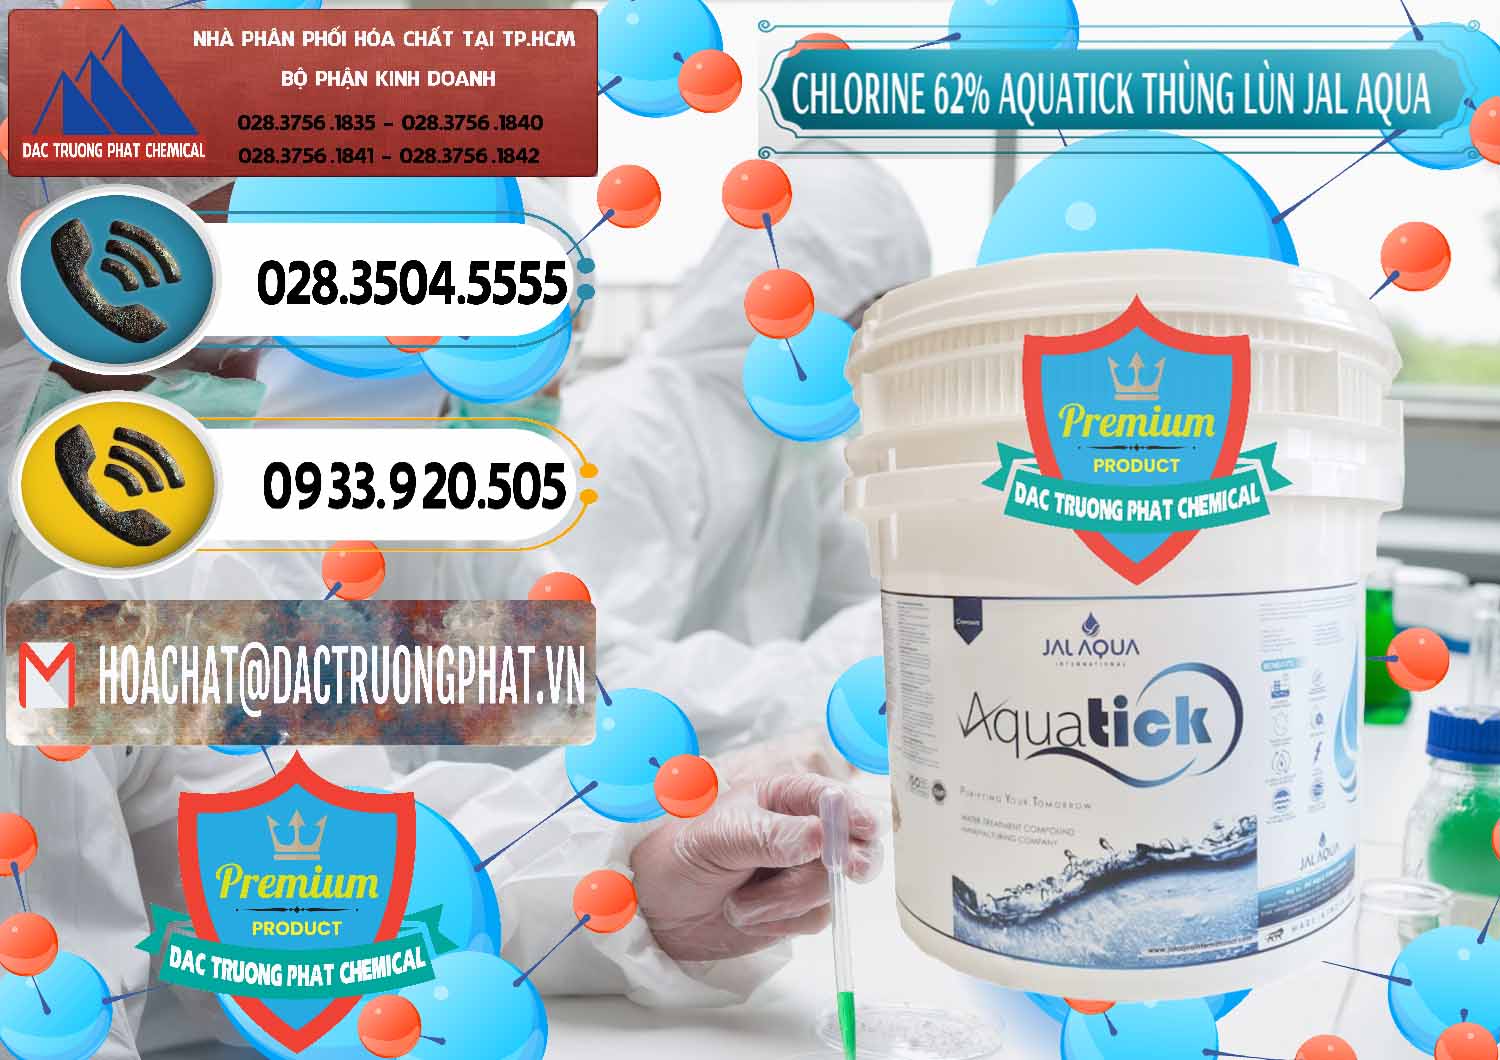 Nơi chuyên phân phối & bán Chlorine – Clorin 62% Aquatick Thùng Lùn Jal Aqua Ấn Độ India - 0238 - Công ty chuyên kinh doanh - phân phối hóa chất tại TP.HCM - hoachatdetnhuom.vn